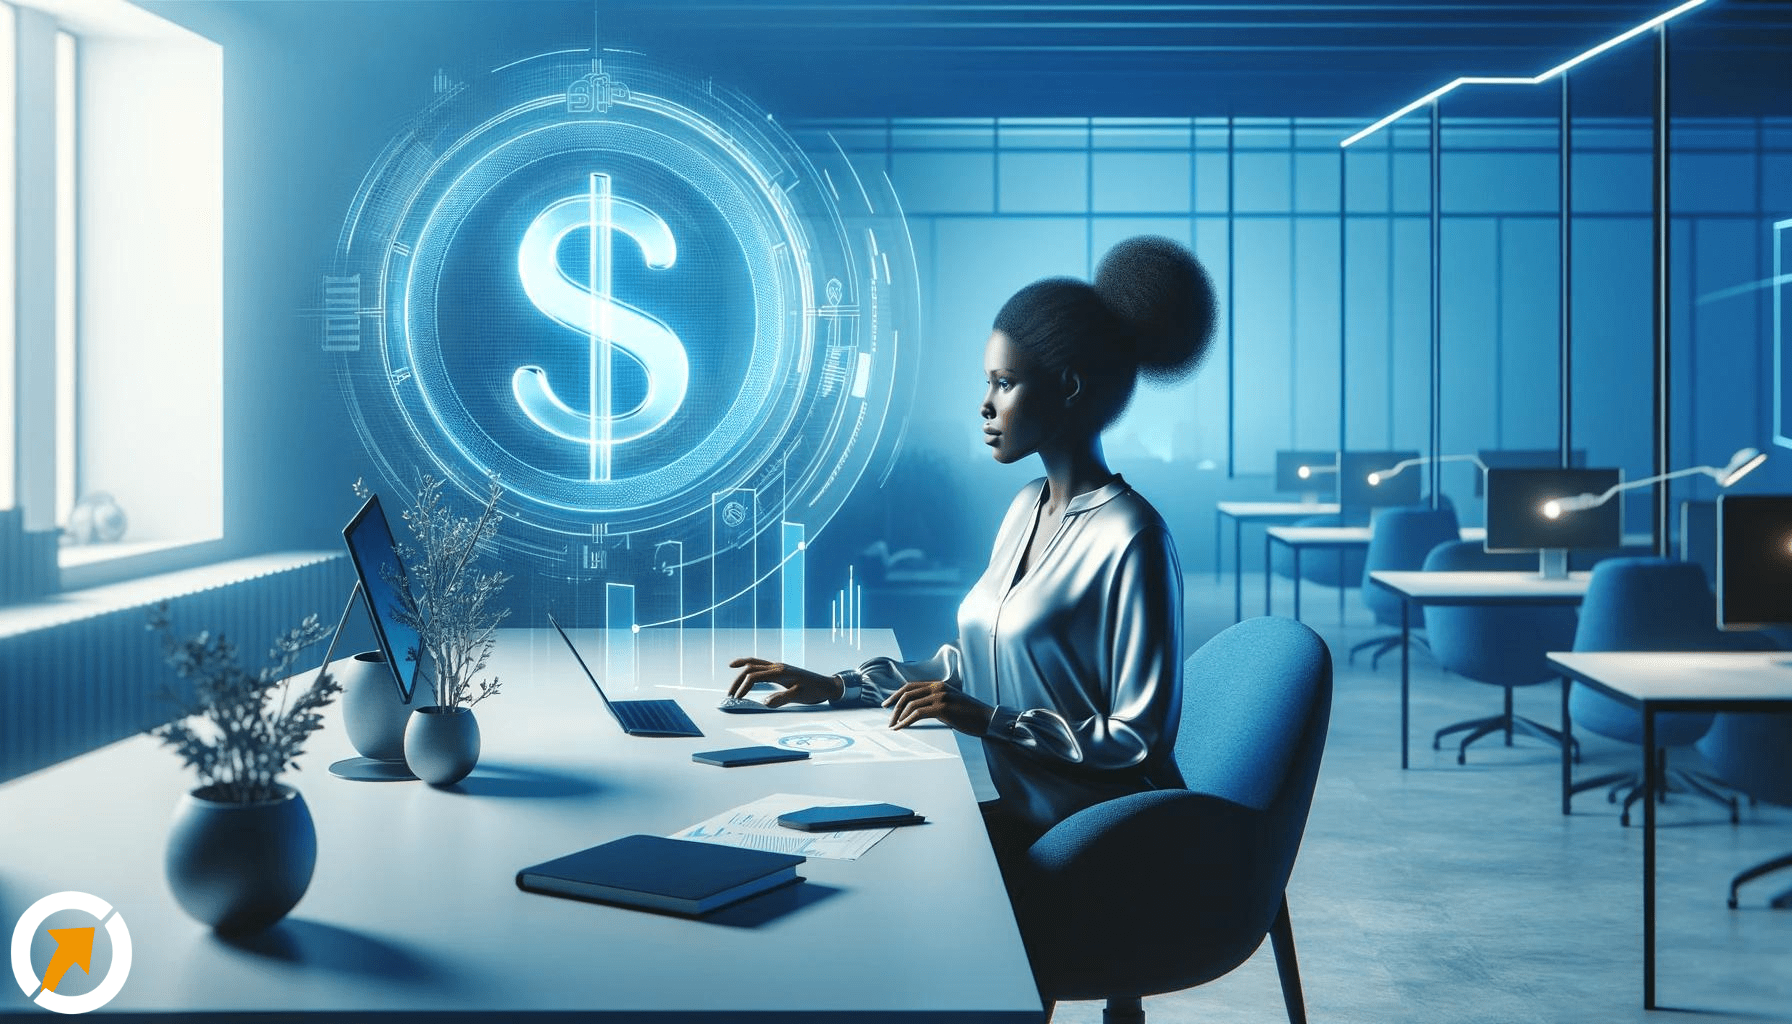 Uma mulher negra em um escritório futurista com tons de azul, concentrada em seu trabalho com um símbolo financeiro dourado ao lado, representando o empoderamento financeiro das mulheres.